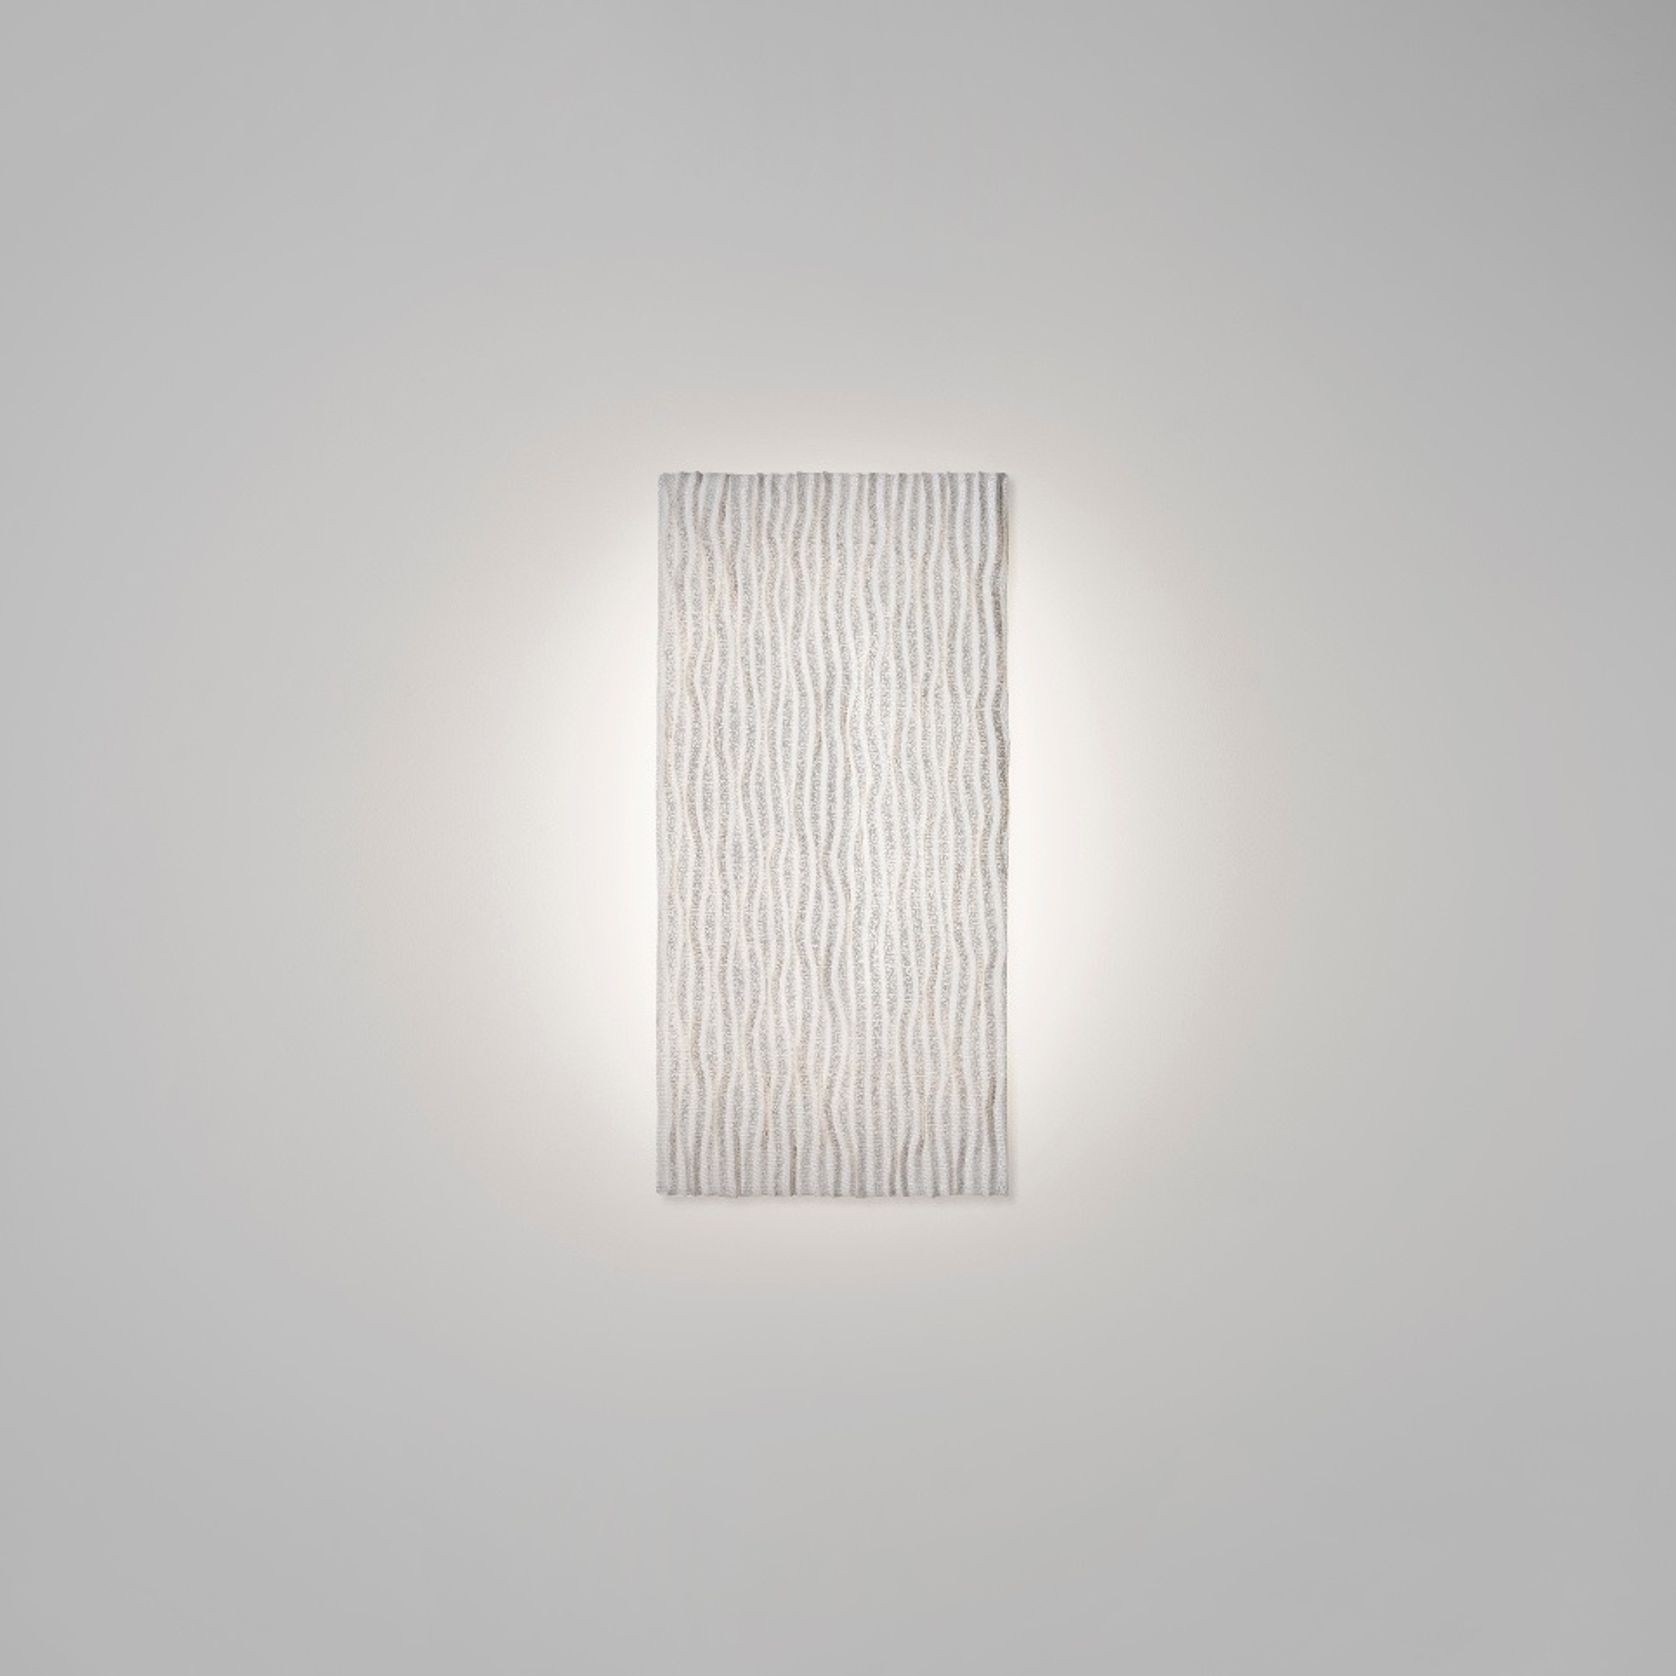 Planum Wall Light by Arturo Alvarez gallery detail image